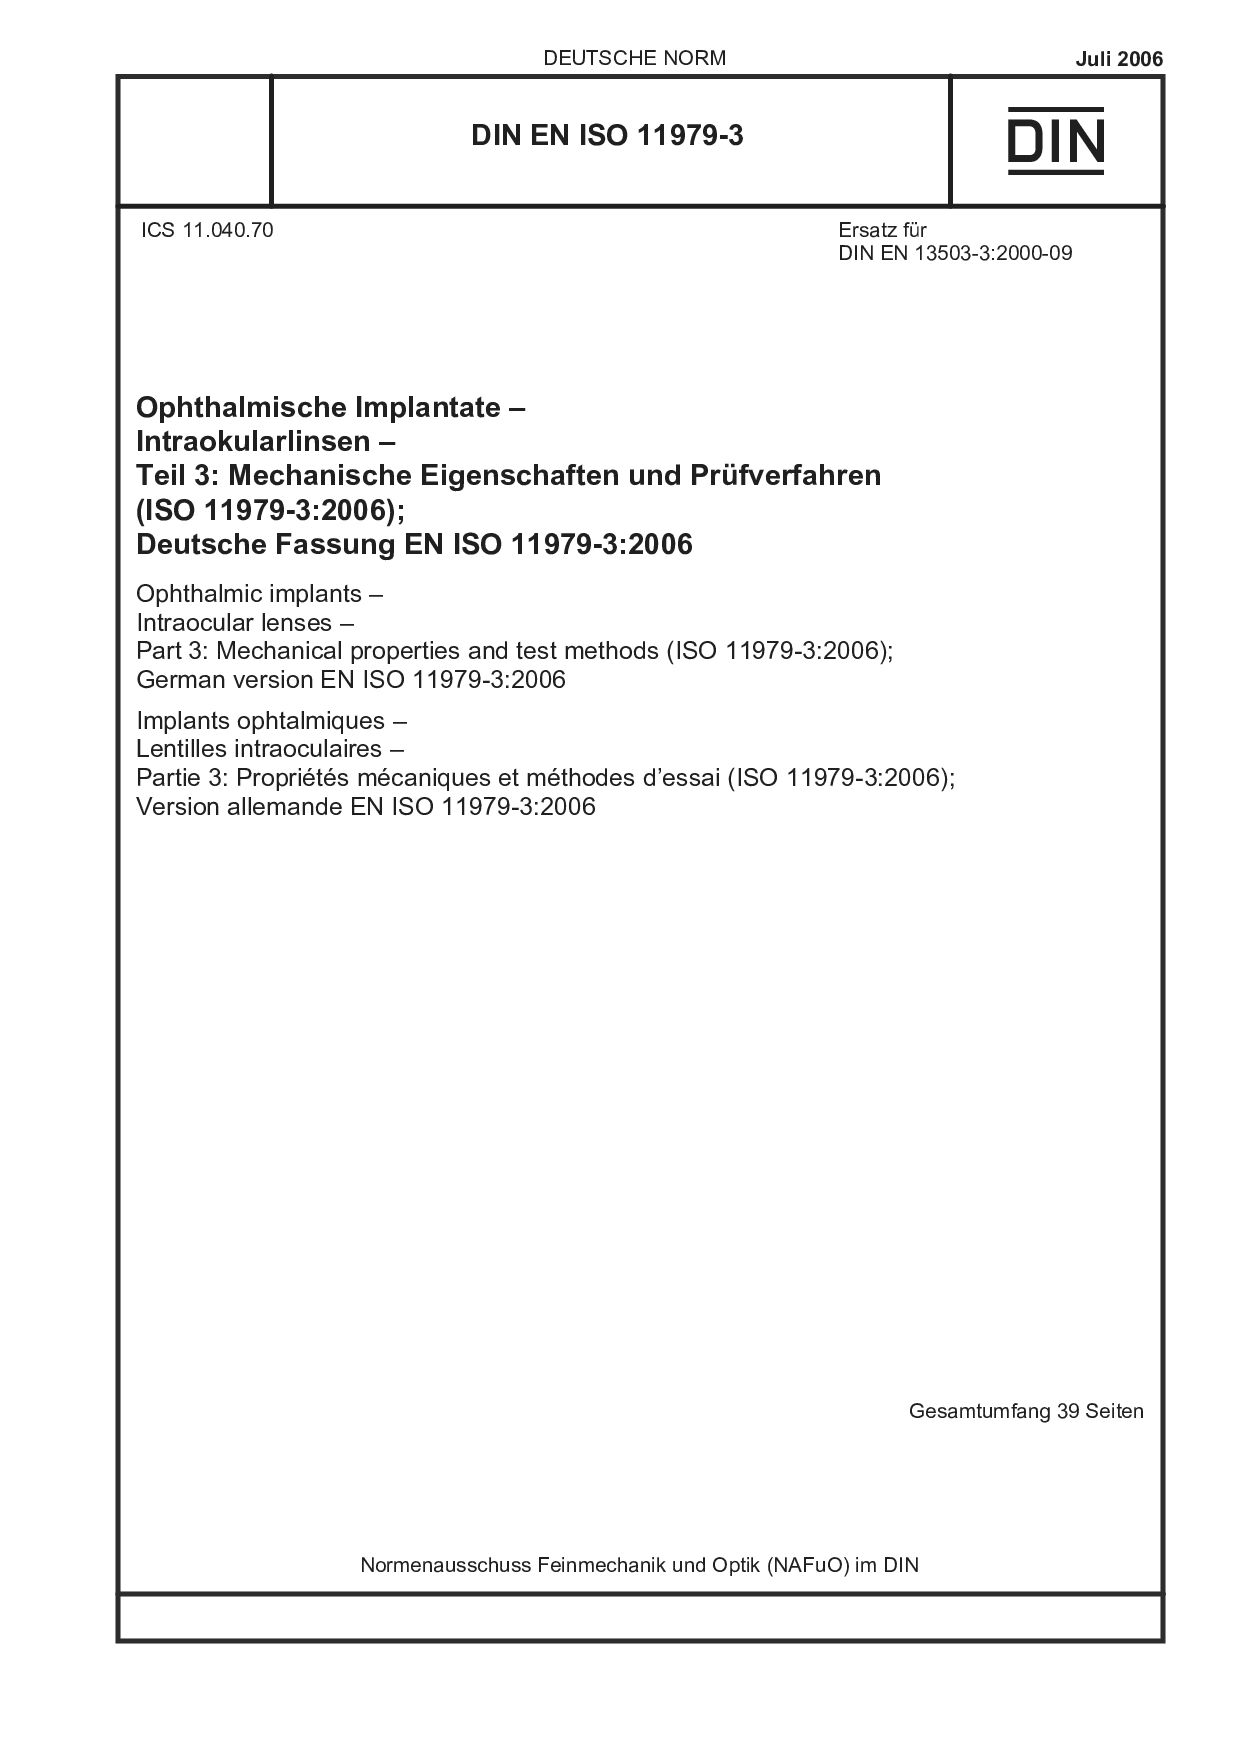 DIN EN ISO 11979-3:2006封面图